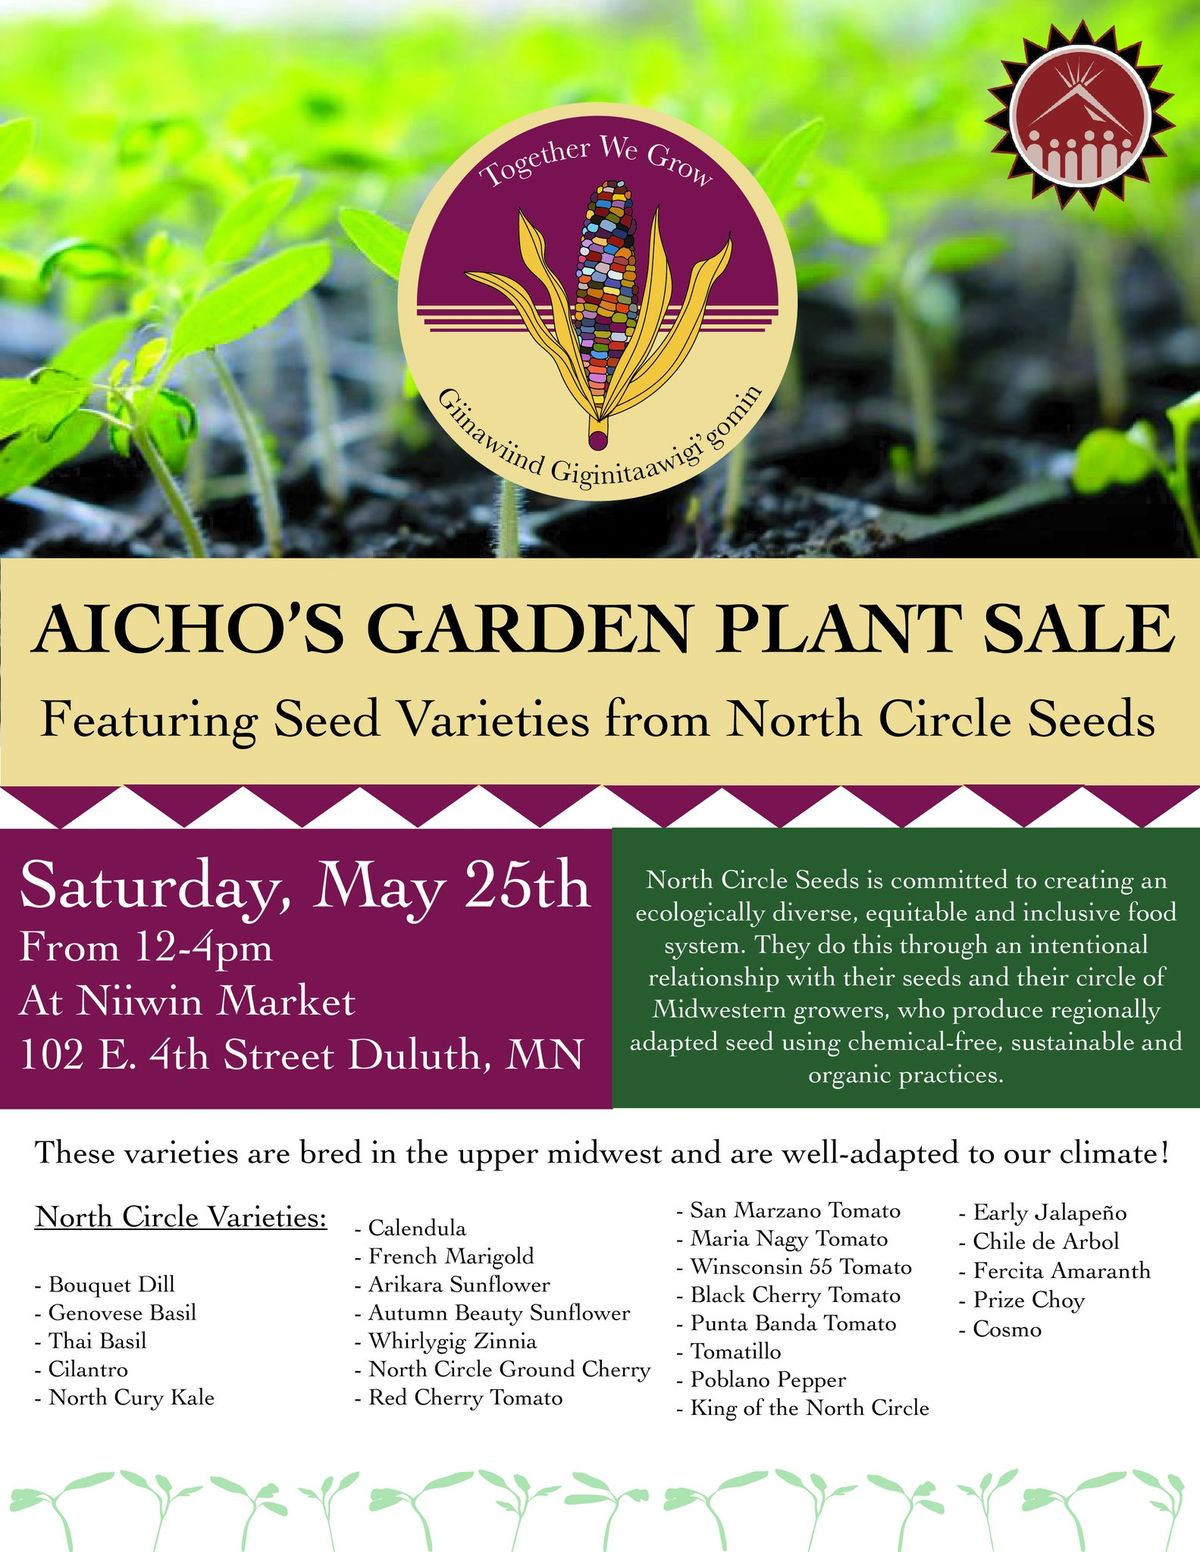 AICHO's Garden Plant Sale